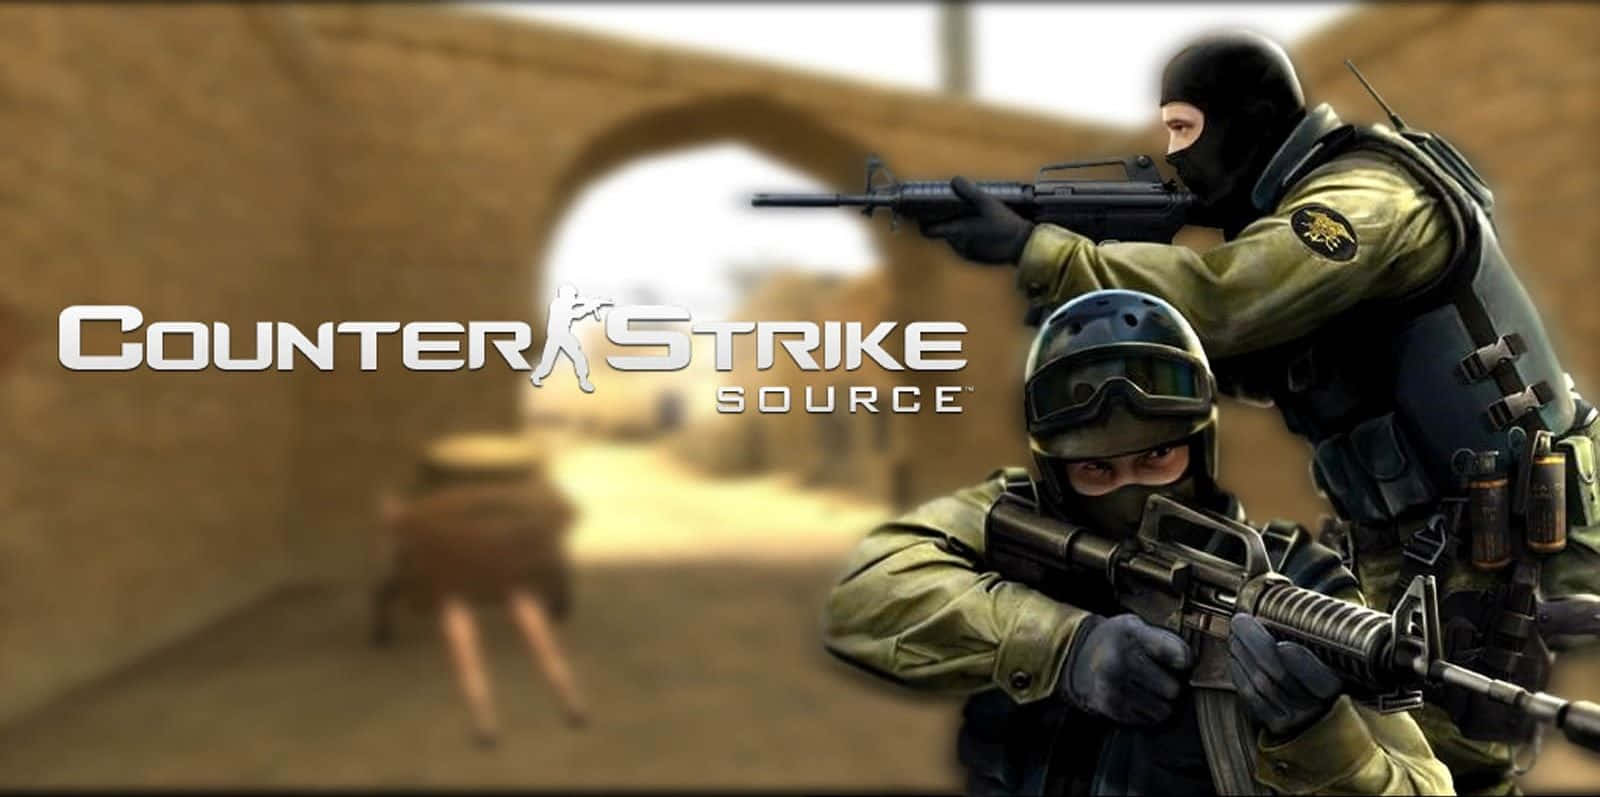 Ilcoinvolgente Mondo Di Counter Strike Source Sfondo